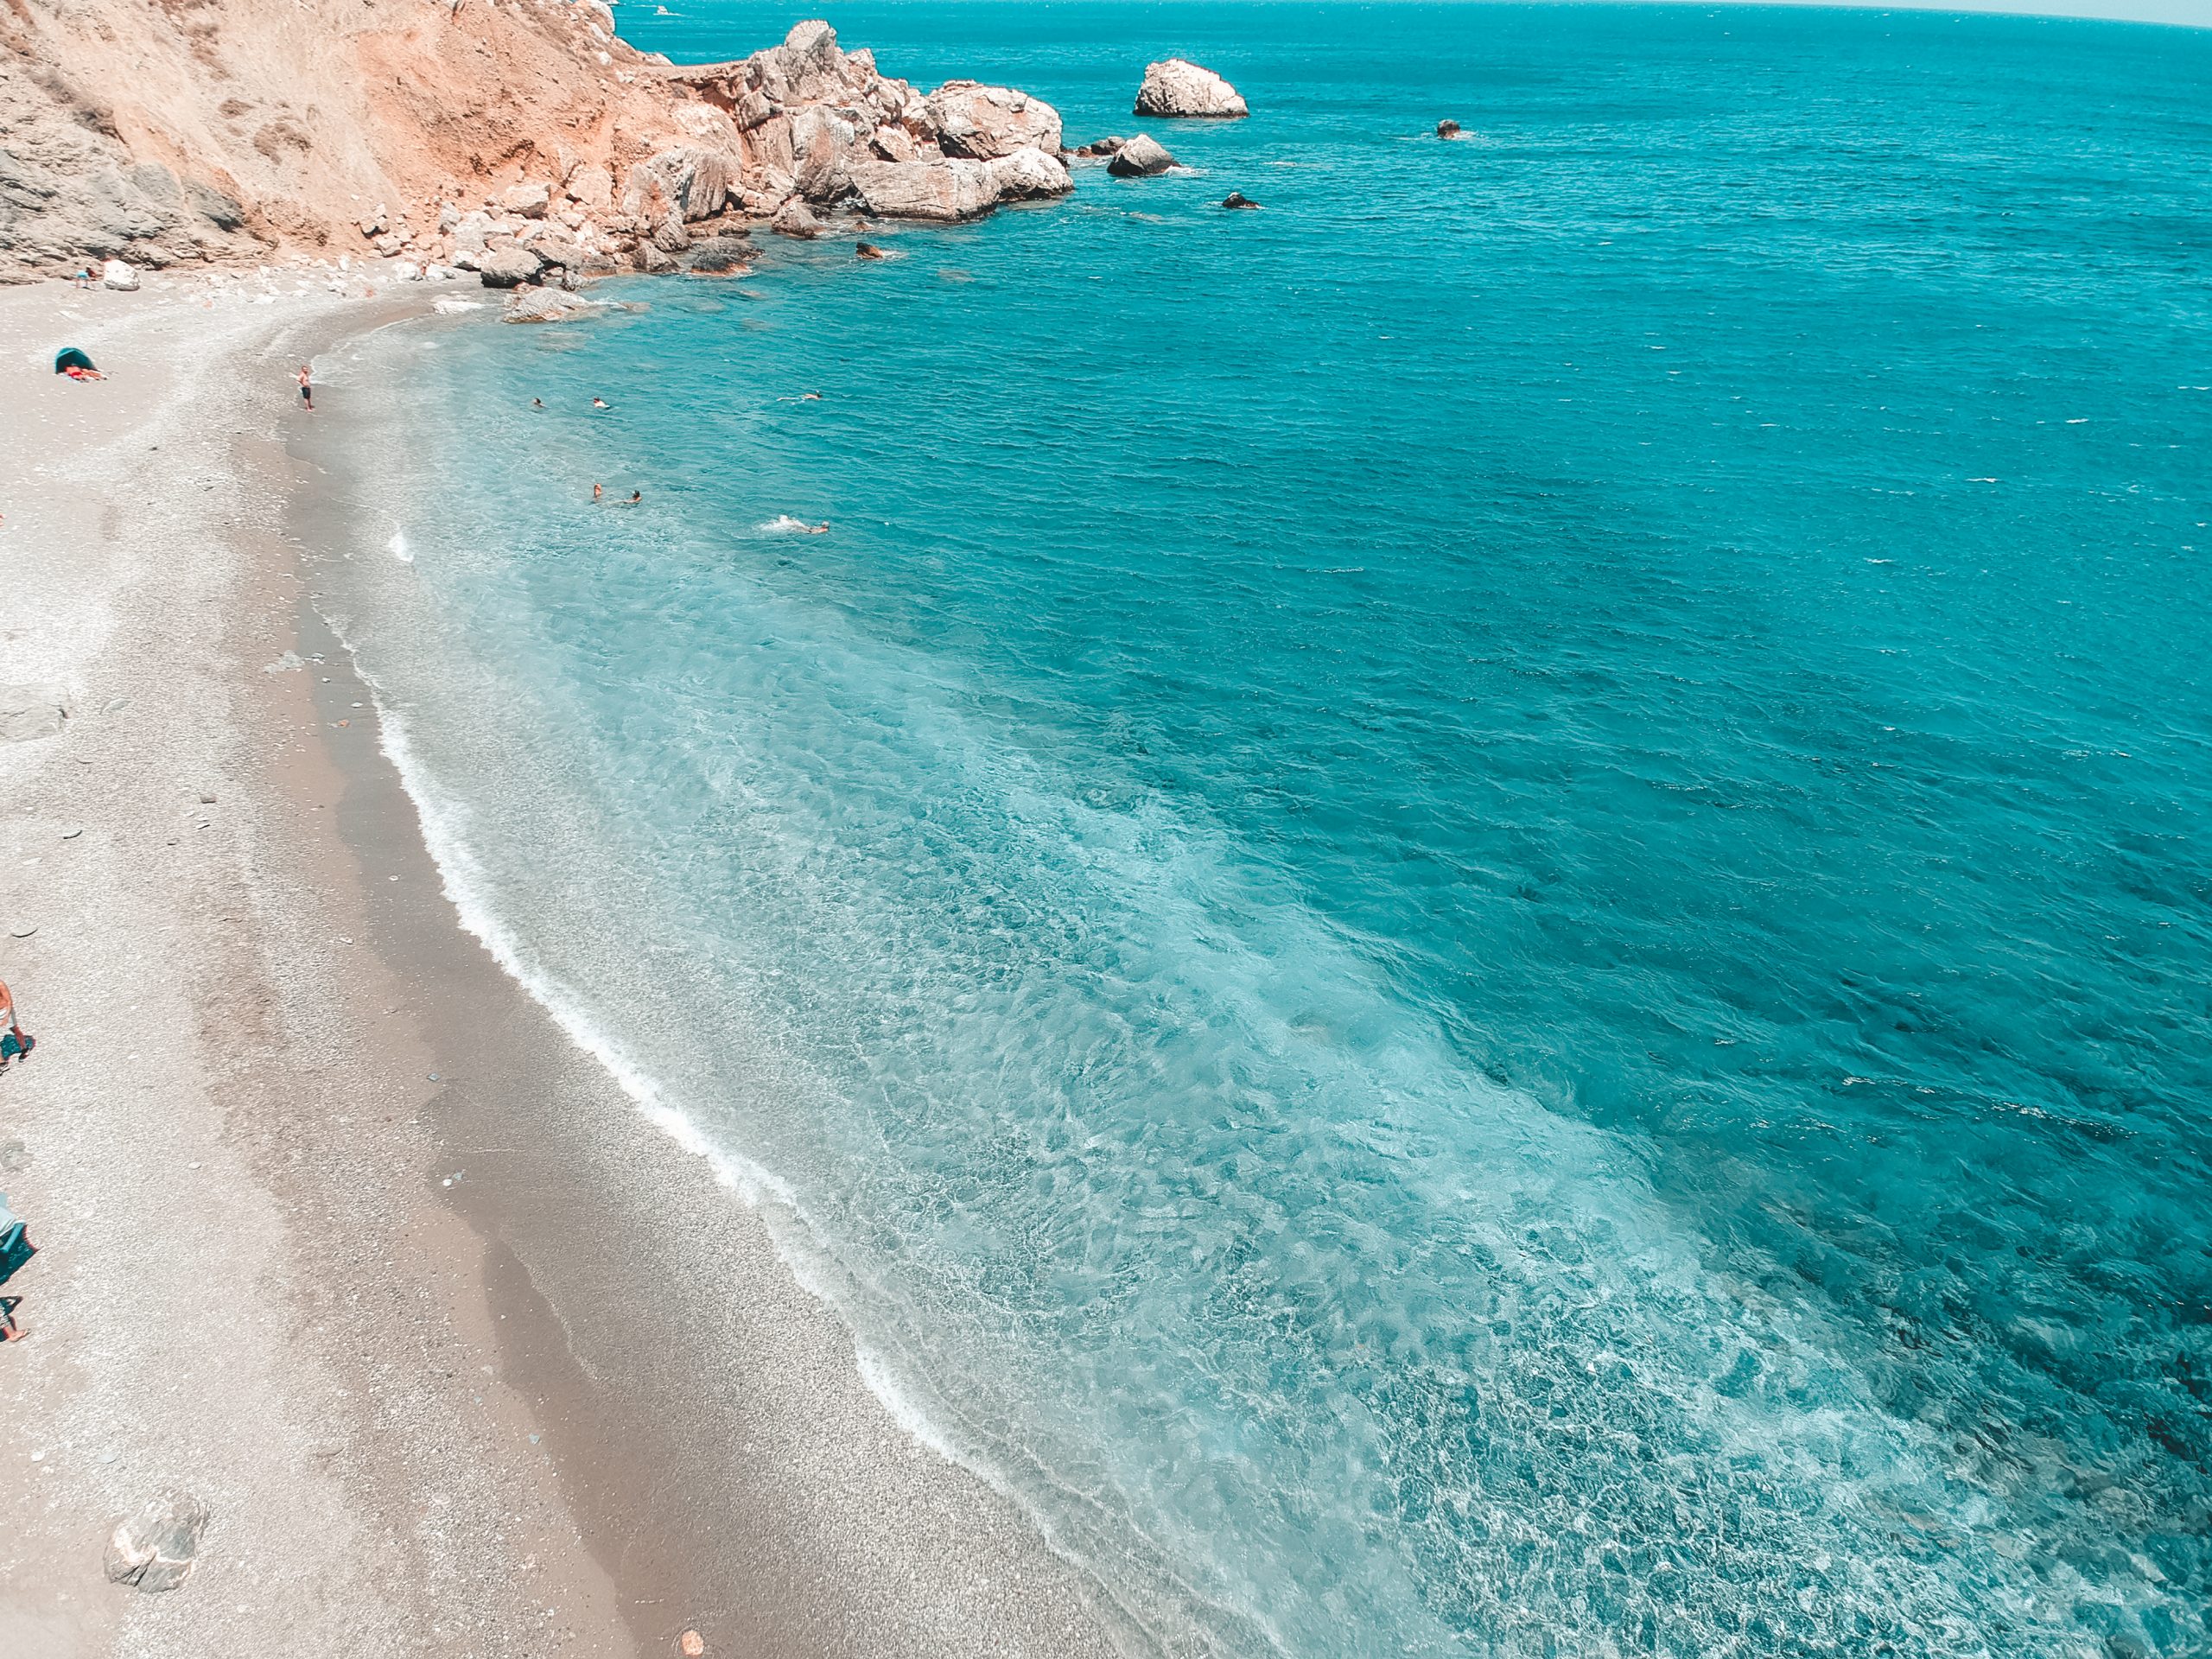 Greek hidden gem Folegandros travel guide - The Teachers Who Travel